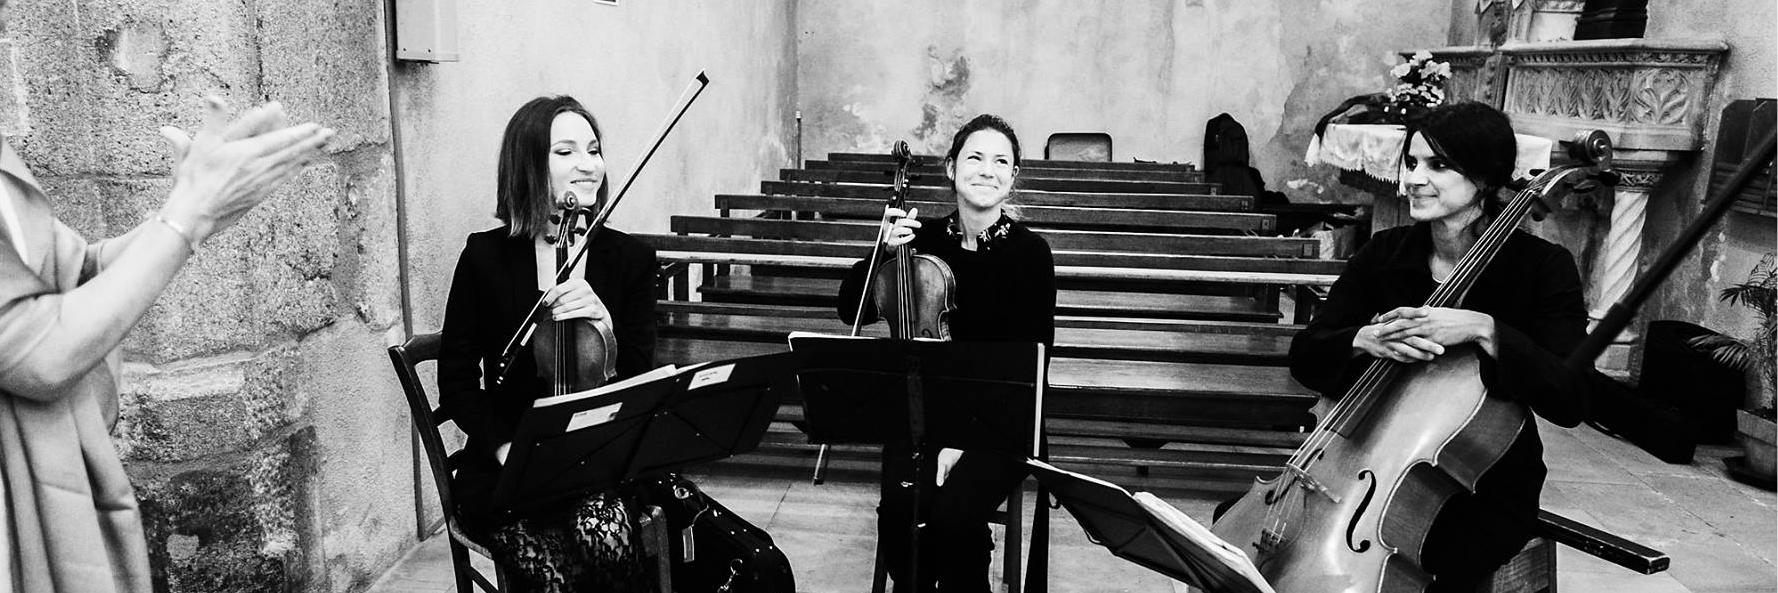 Luster Trio, groupe de musique Acoustique en représentation à Rhône - photo de couverture n° 3